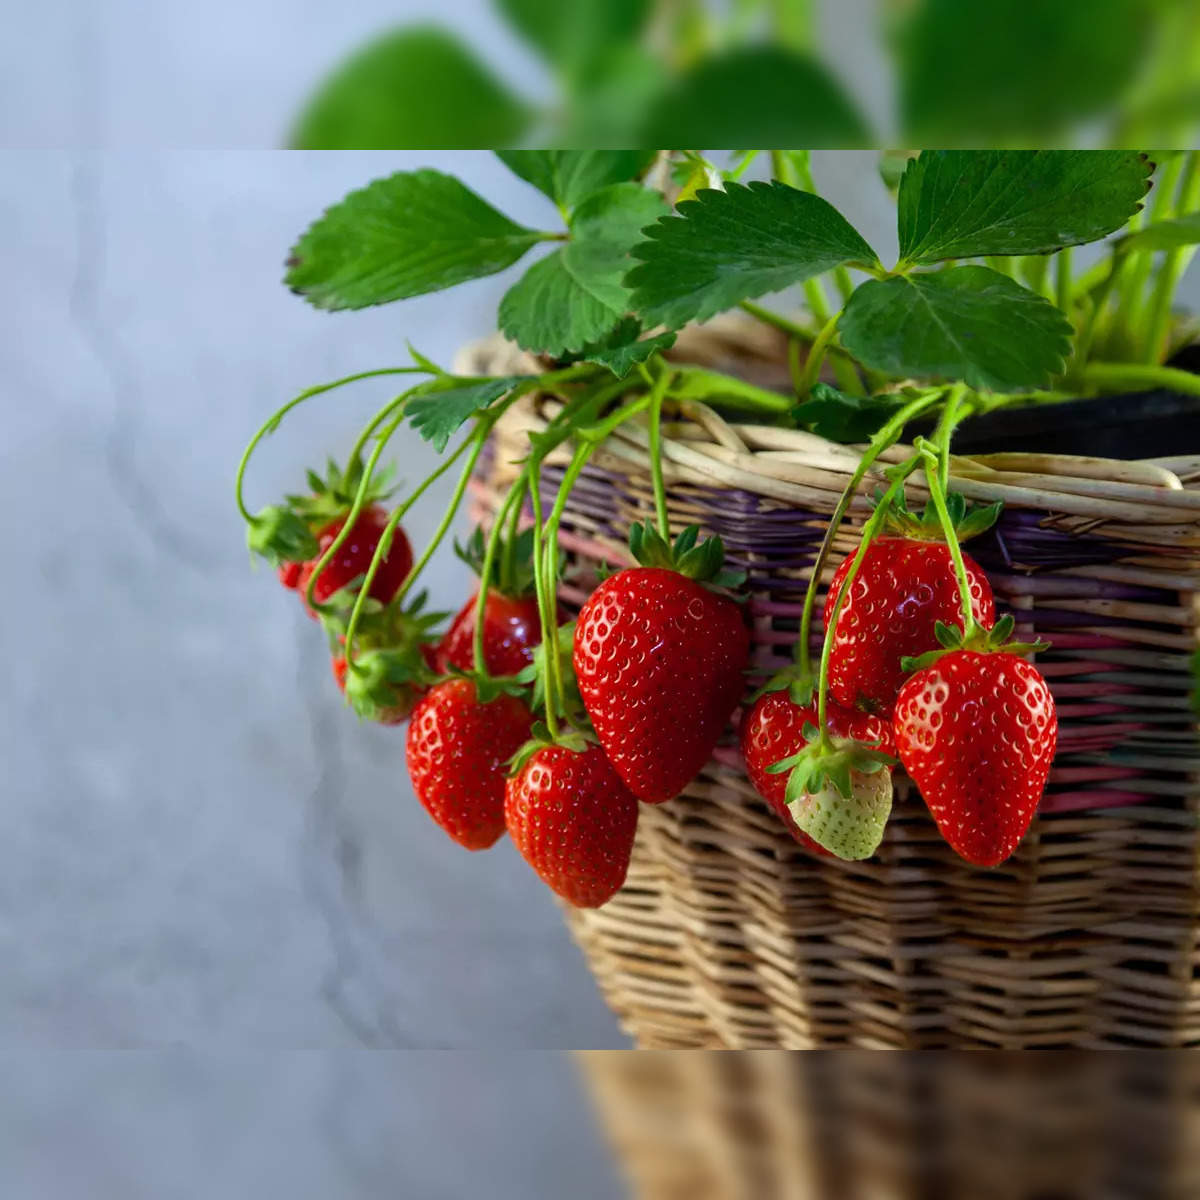 Top 5 health benefits of strawberries